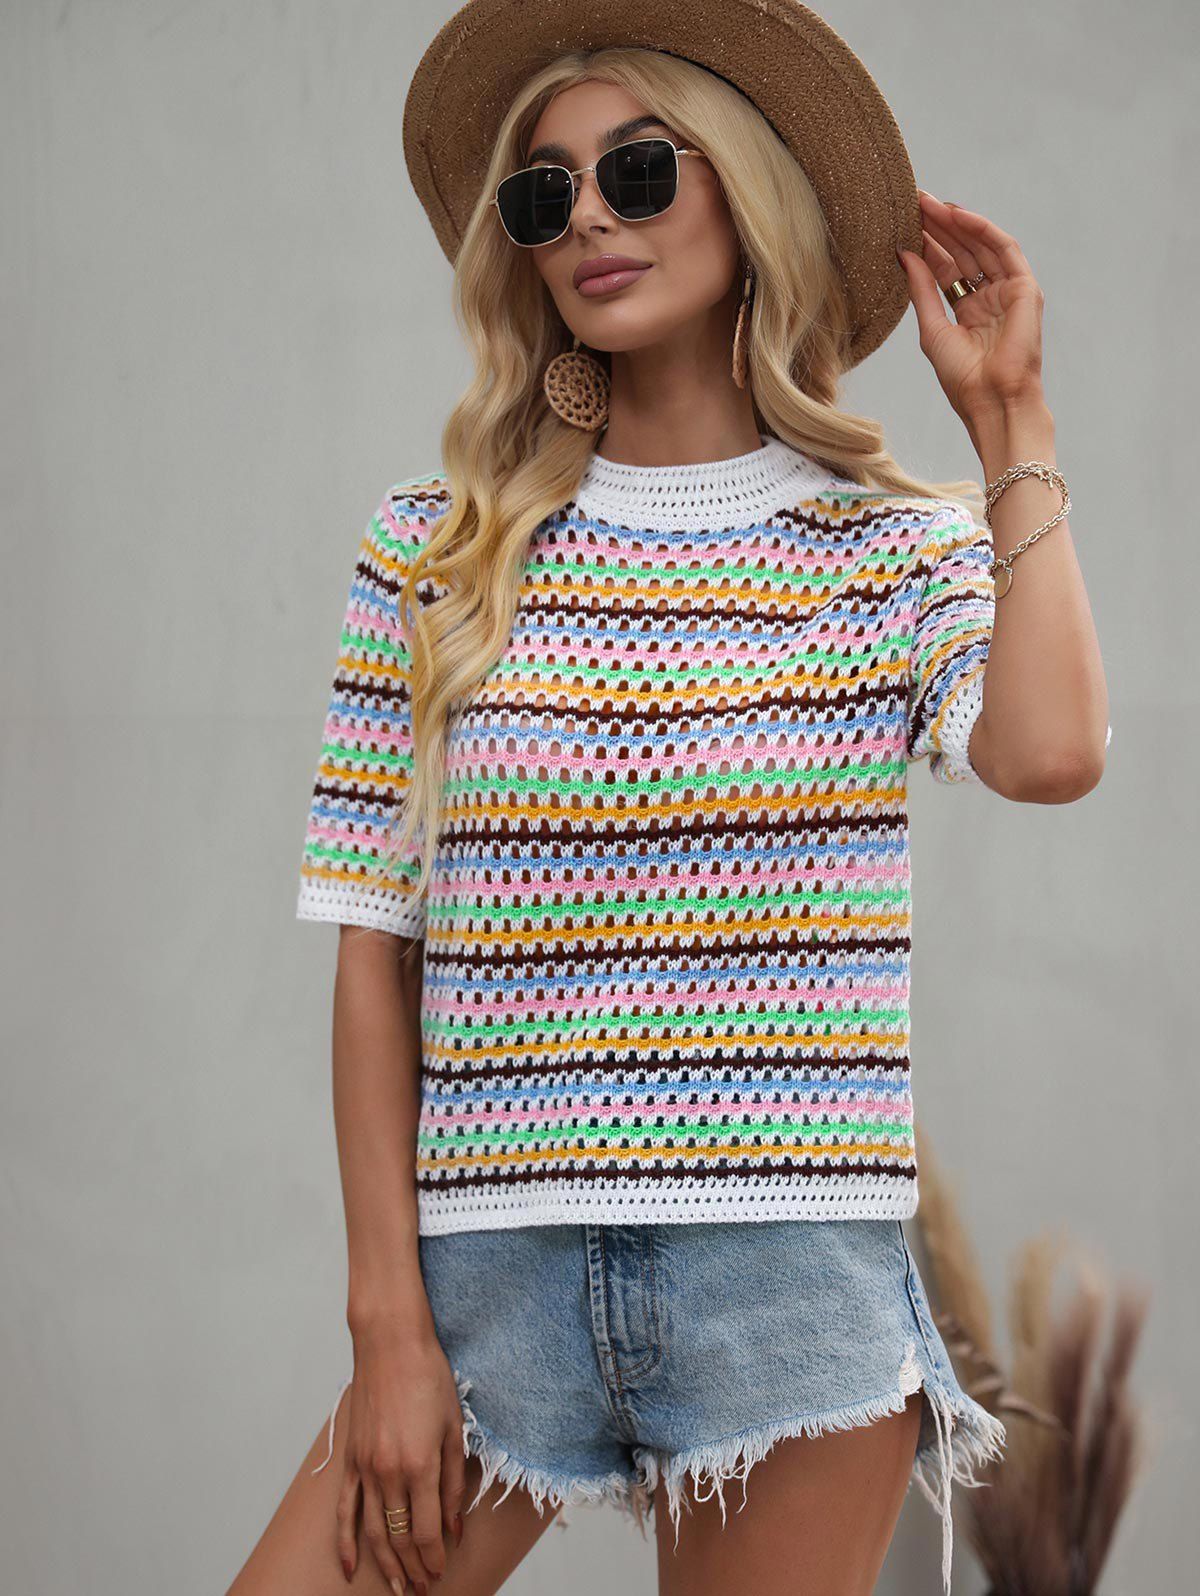 T-shirt Rayé Coloré Ajouré Au Crochet - multicolor M